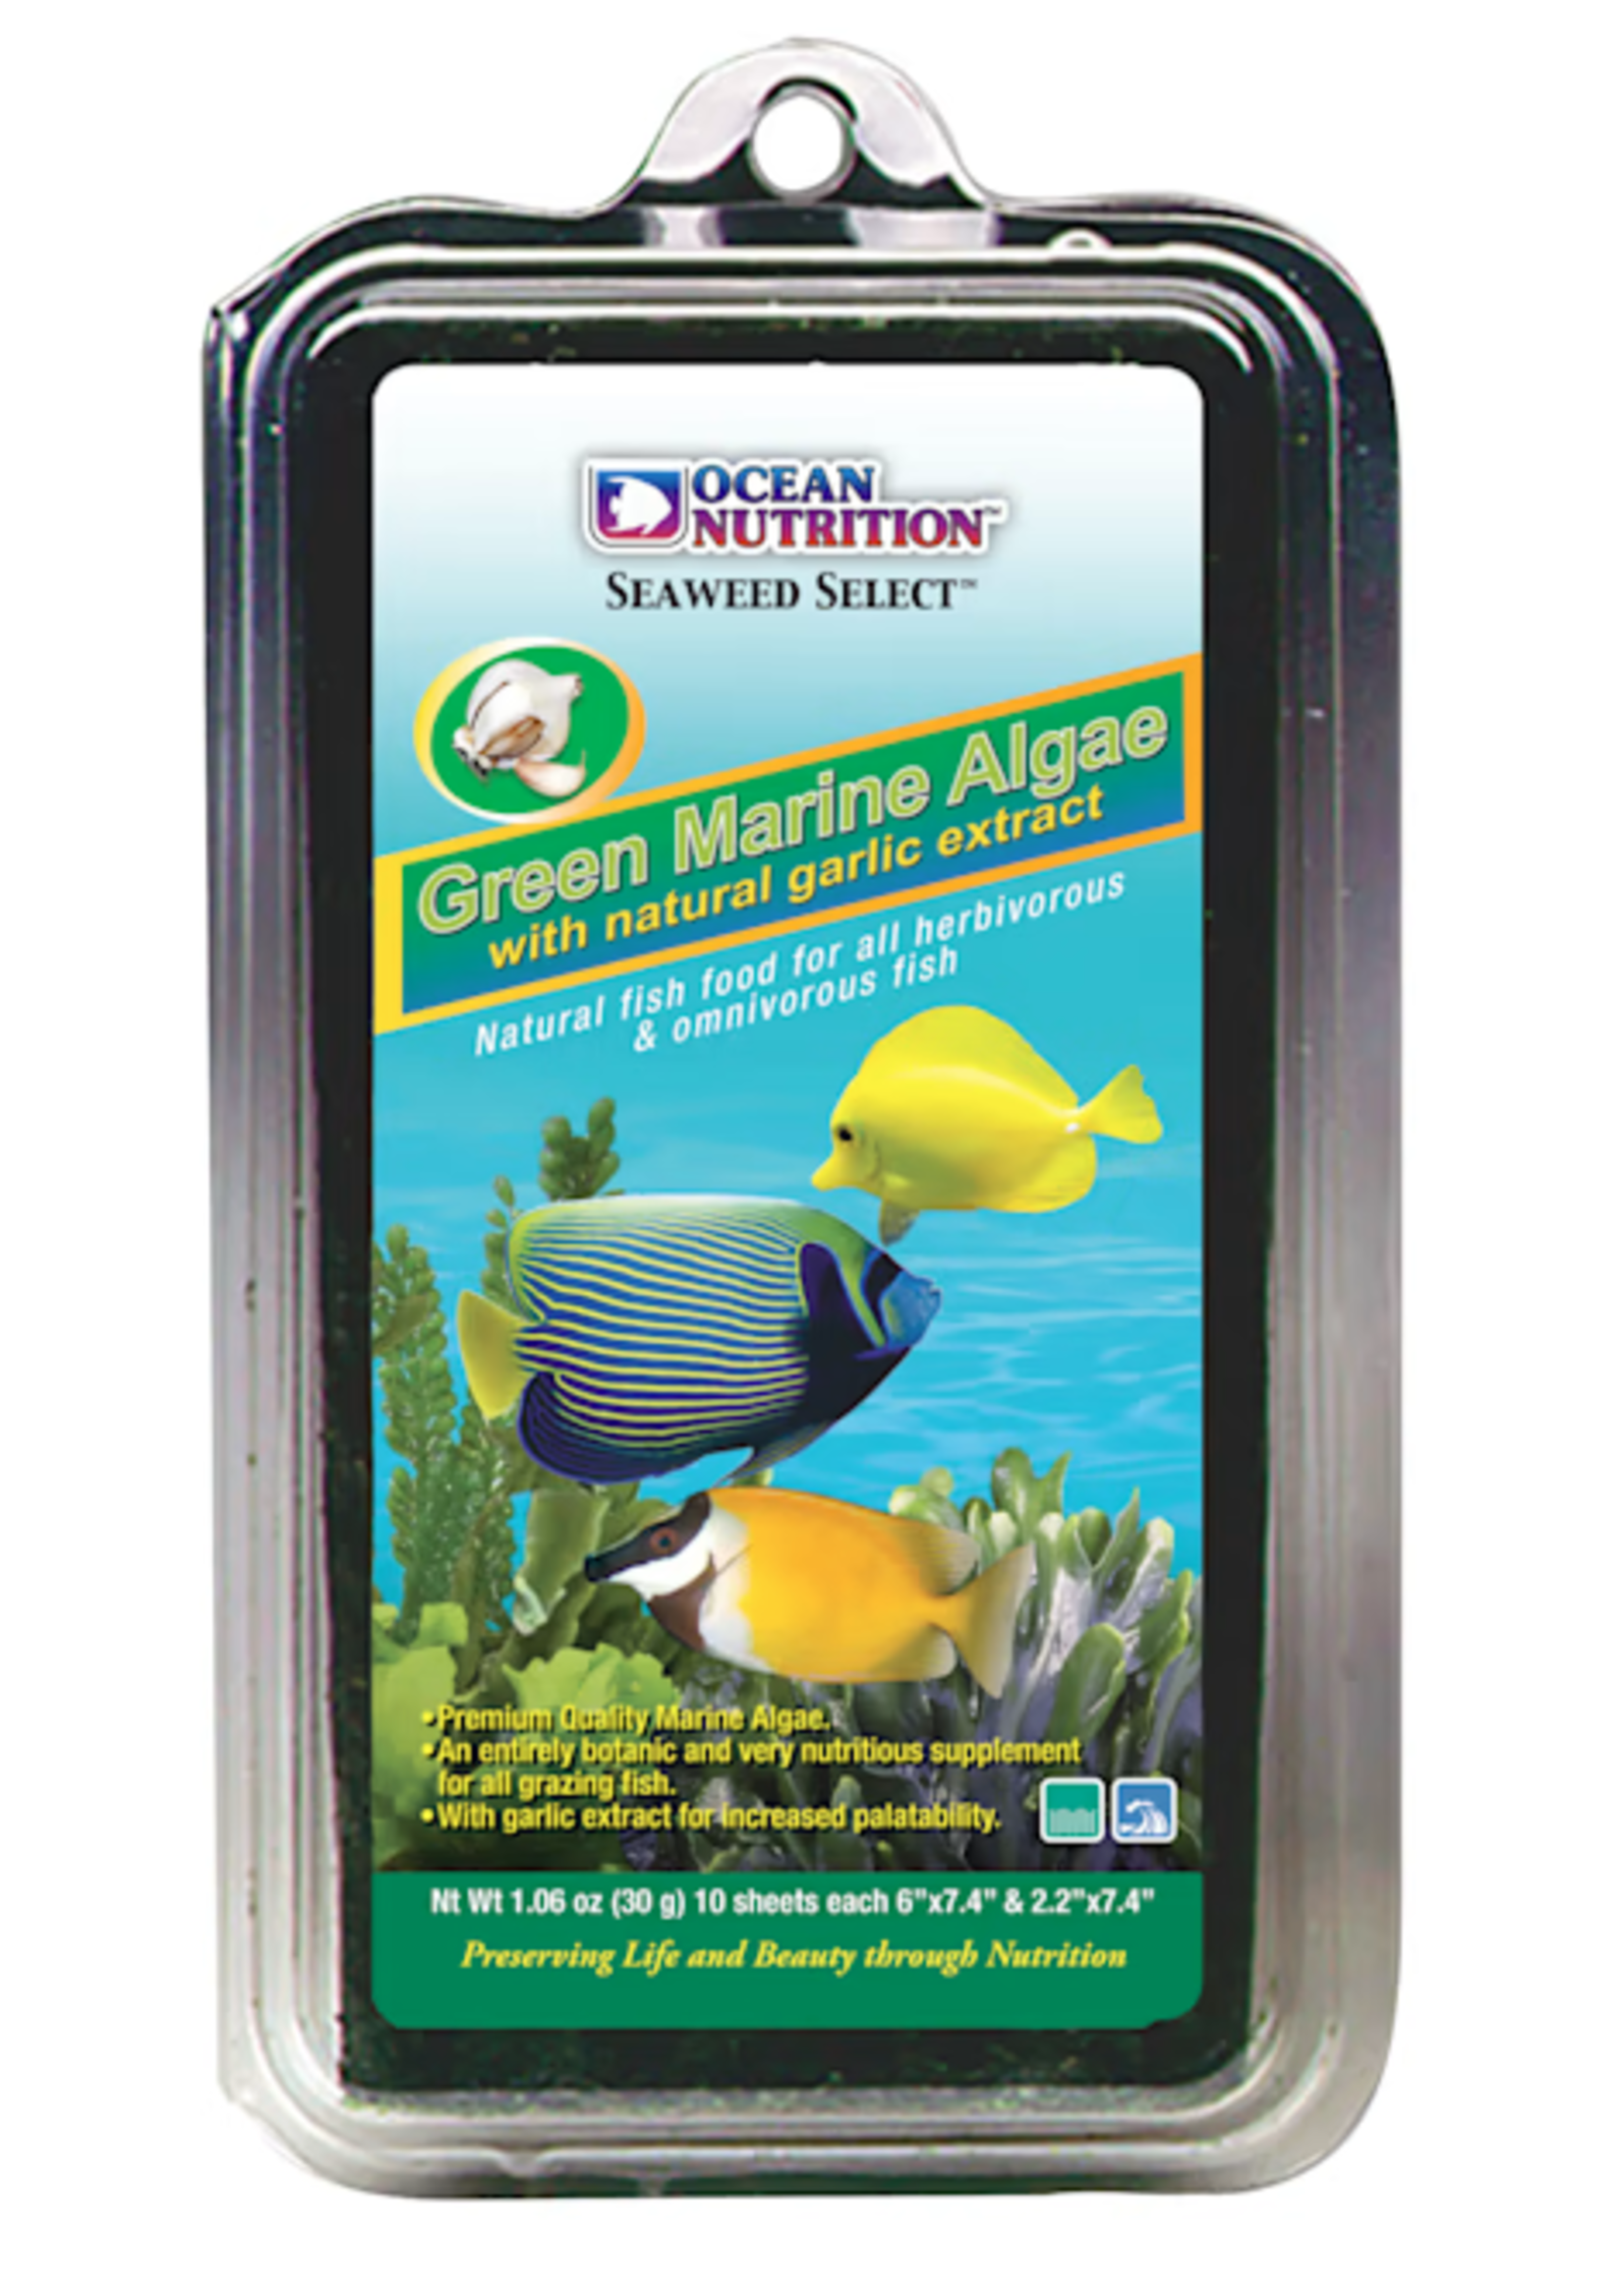 Ocean Nutrition Seaweed Select